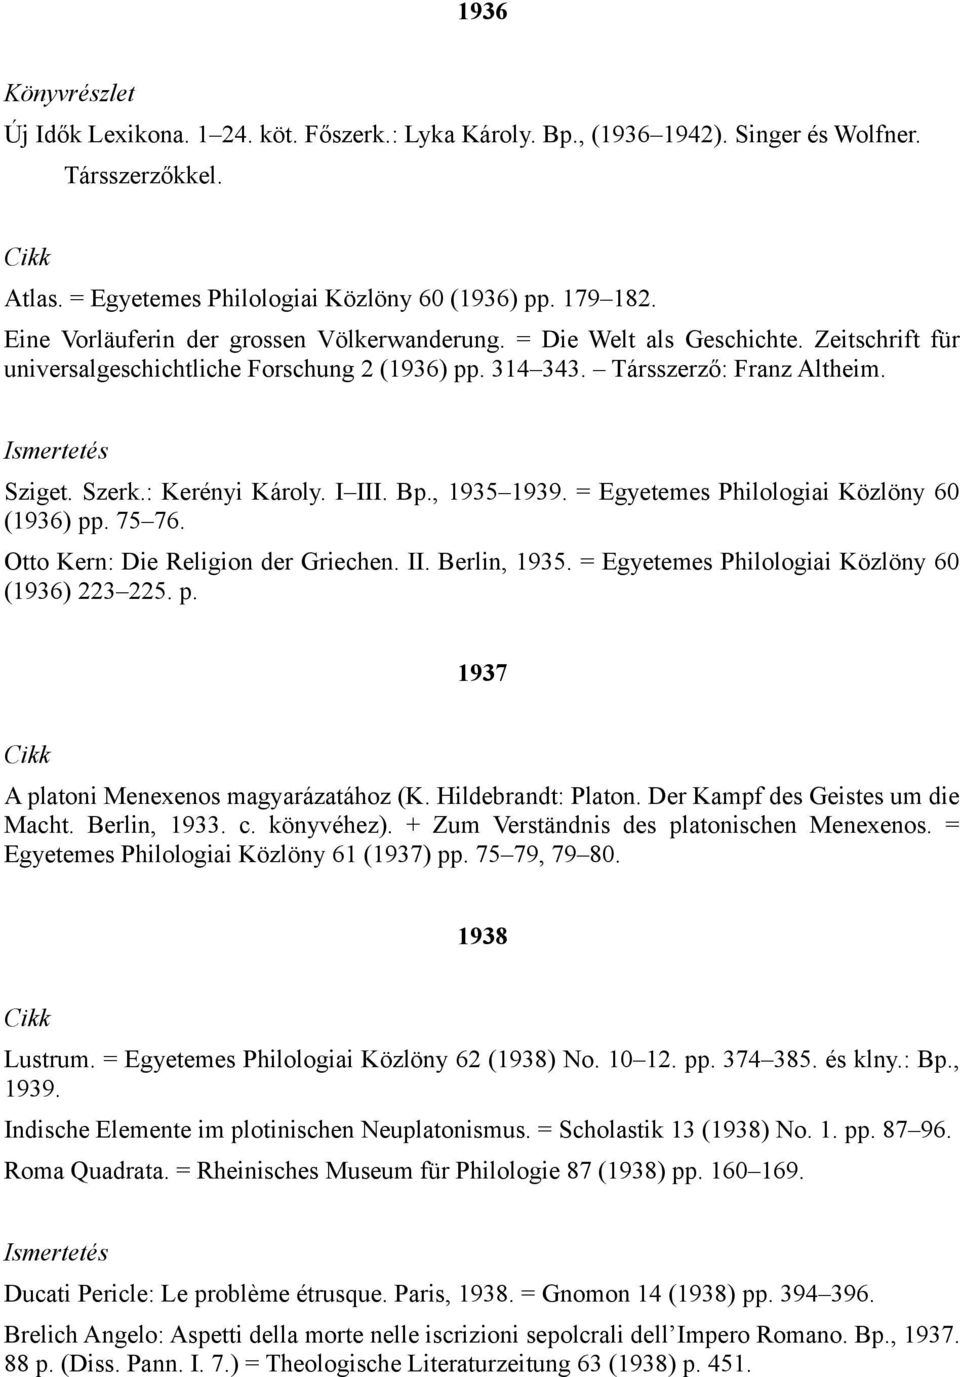 : Kerényi Károly. I III. Bp., 1935 1939. = Egyetemes Philologiai Közlöny 60 (1936) pp. 75 76. Otto Kern: Die Religion der Griechen. II. Berlin, 1935. = Egyetemes Philologiai Közlöny 60 (1936) 223 225.